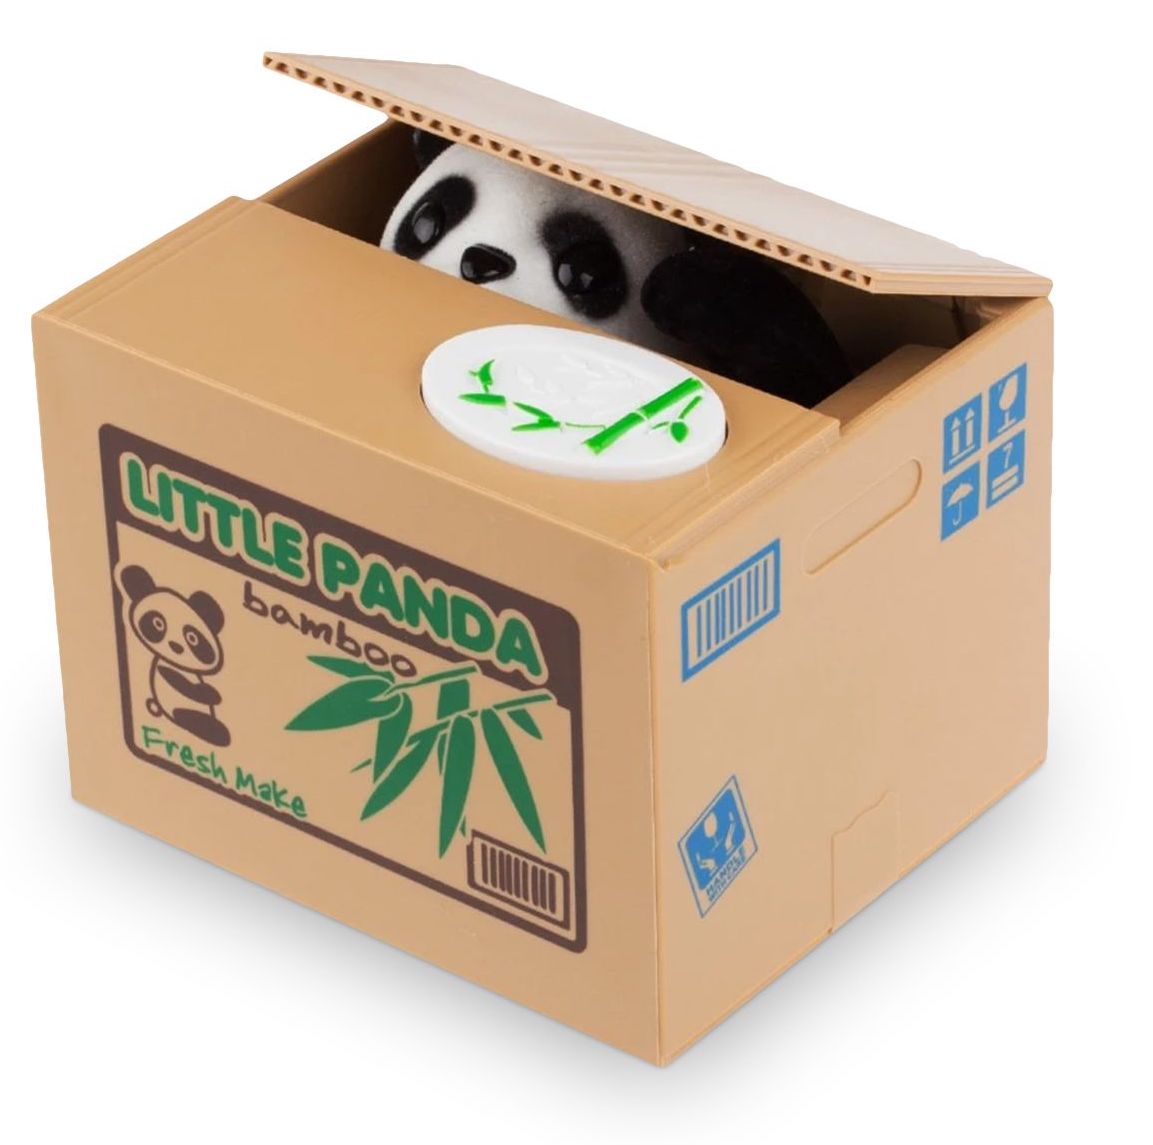 BOX for coins - eine elektronische Geldkassette in Form eines PANDA